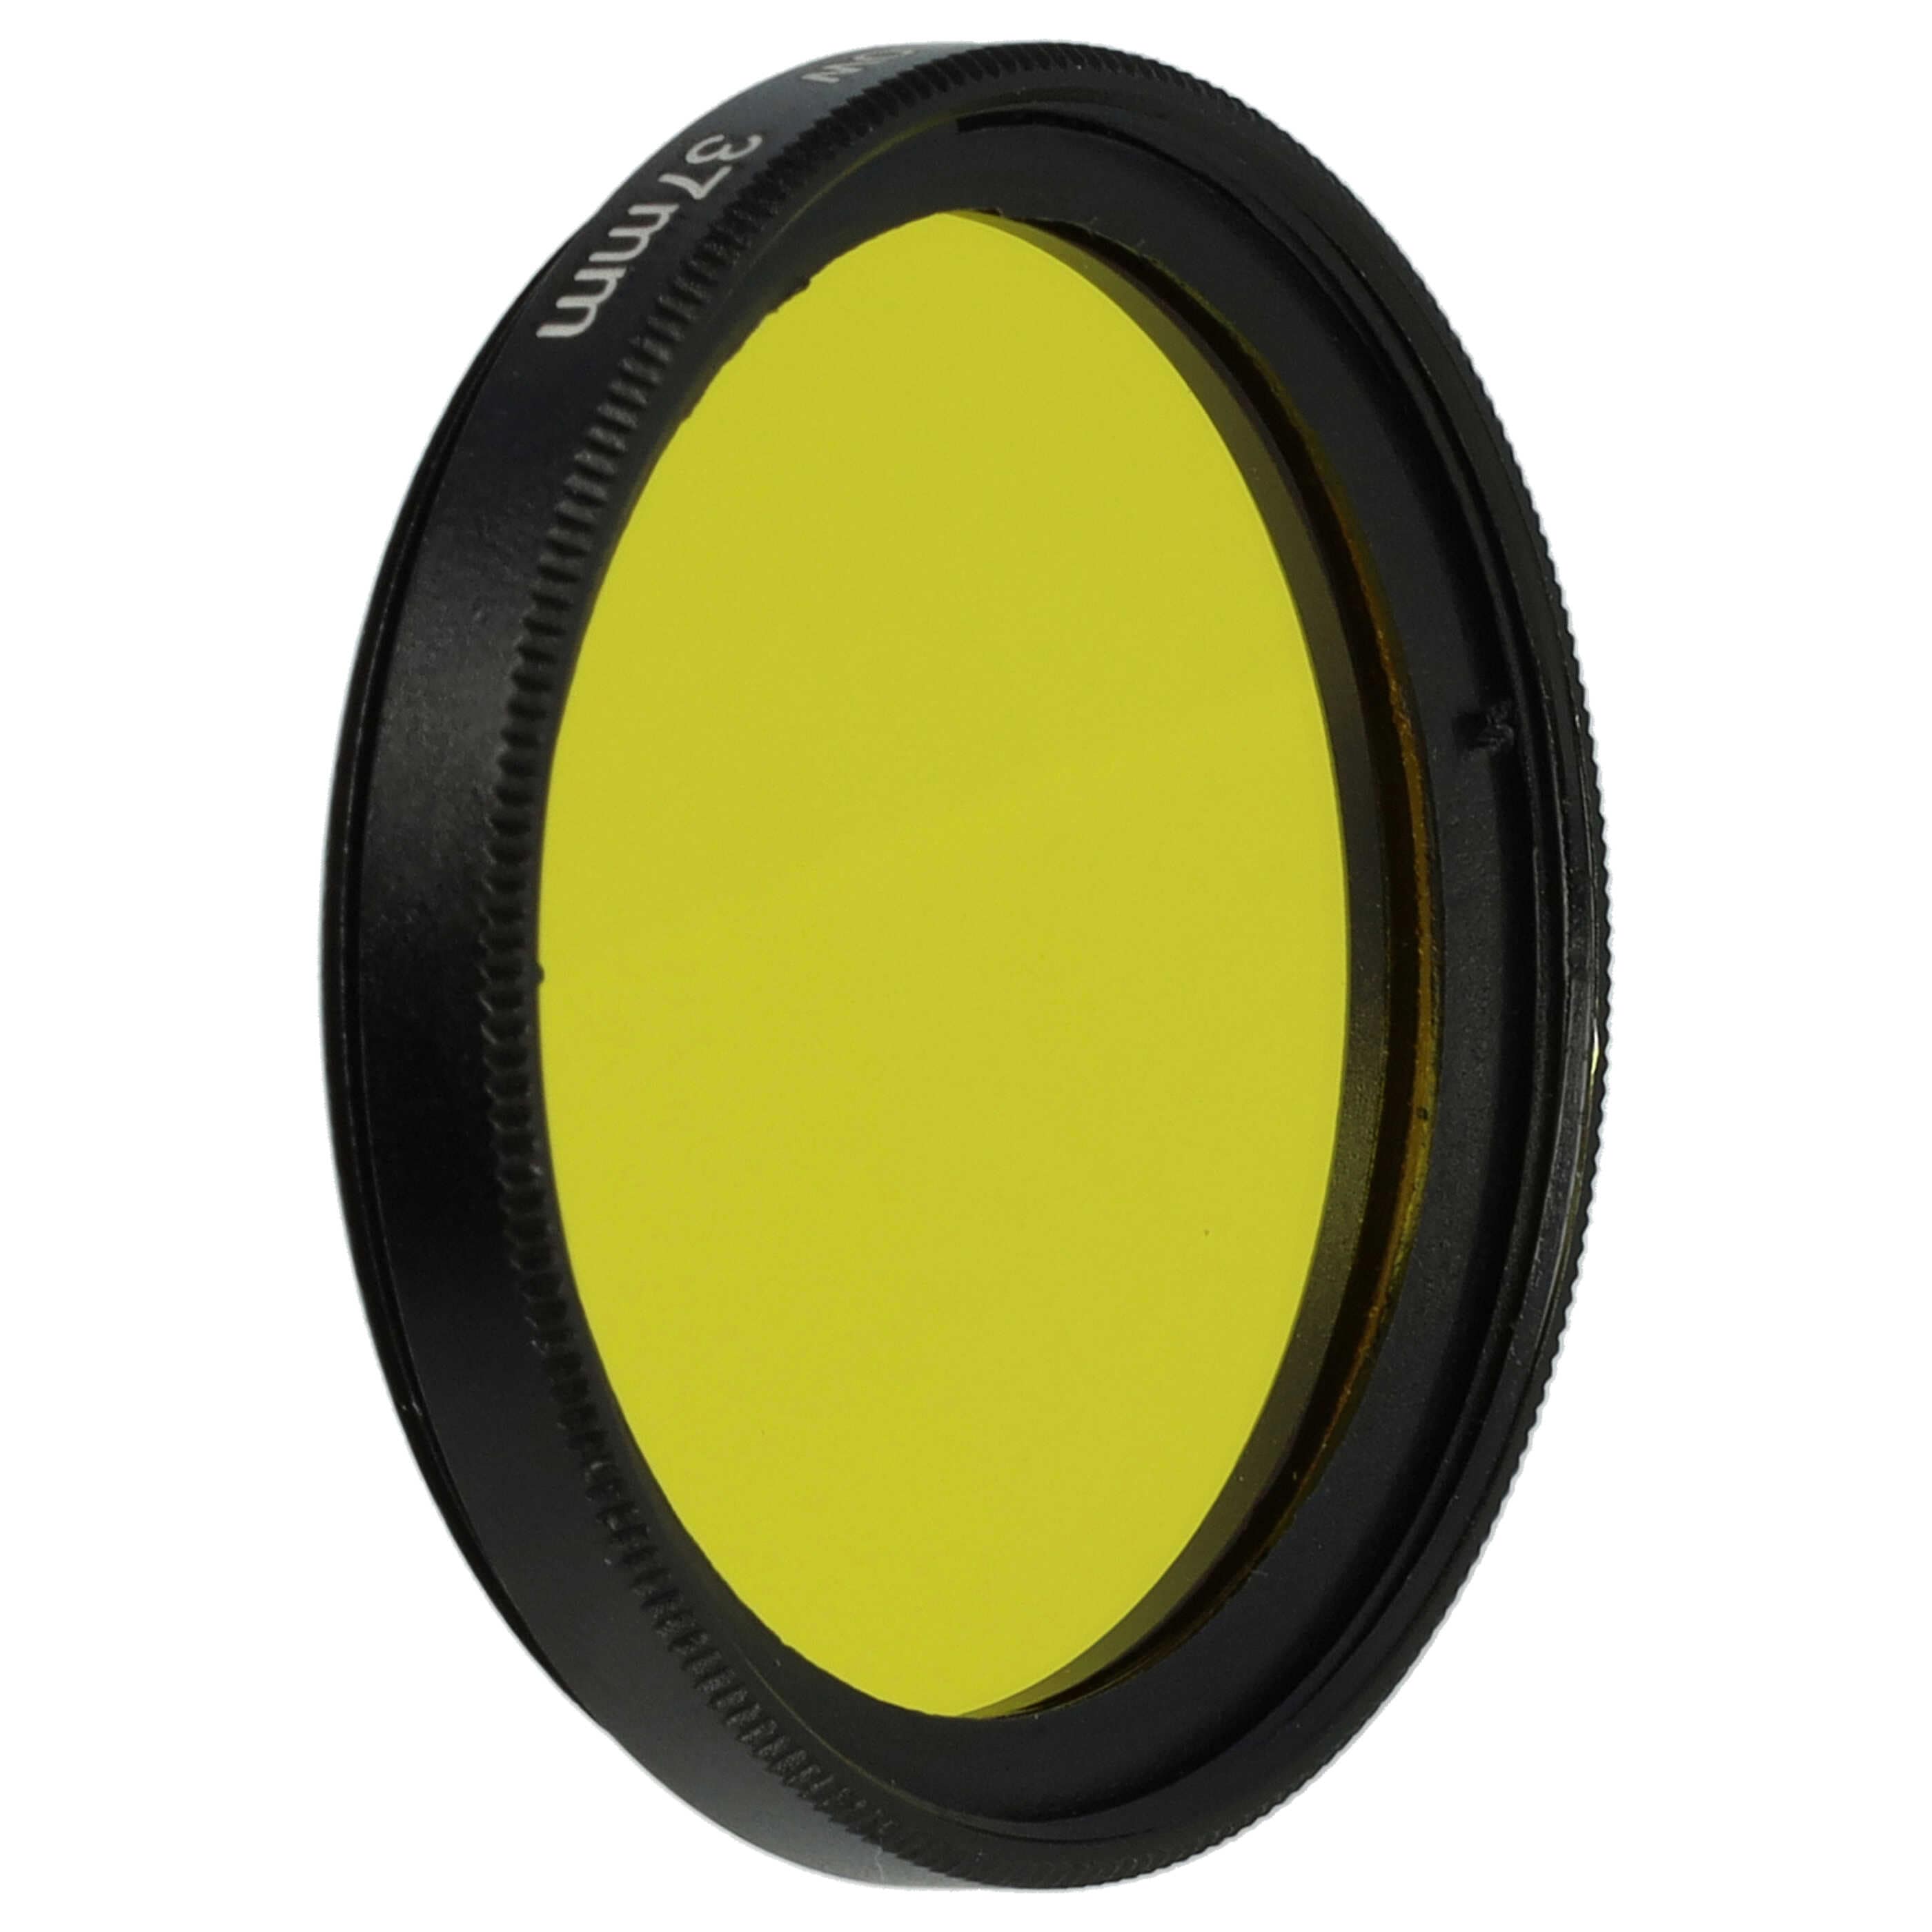 Filtre de couleur jaune pour objectifs d'appareils photo de 37 mm - Filtre jaune